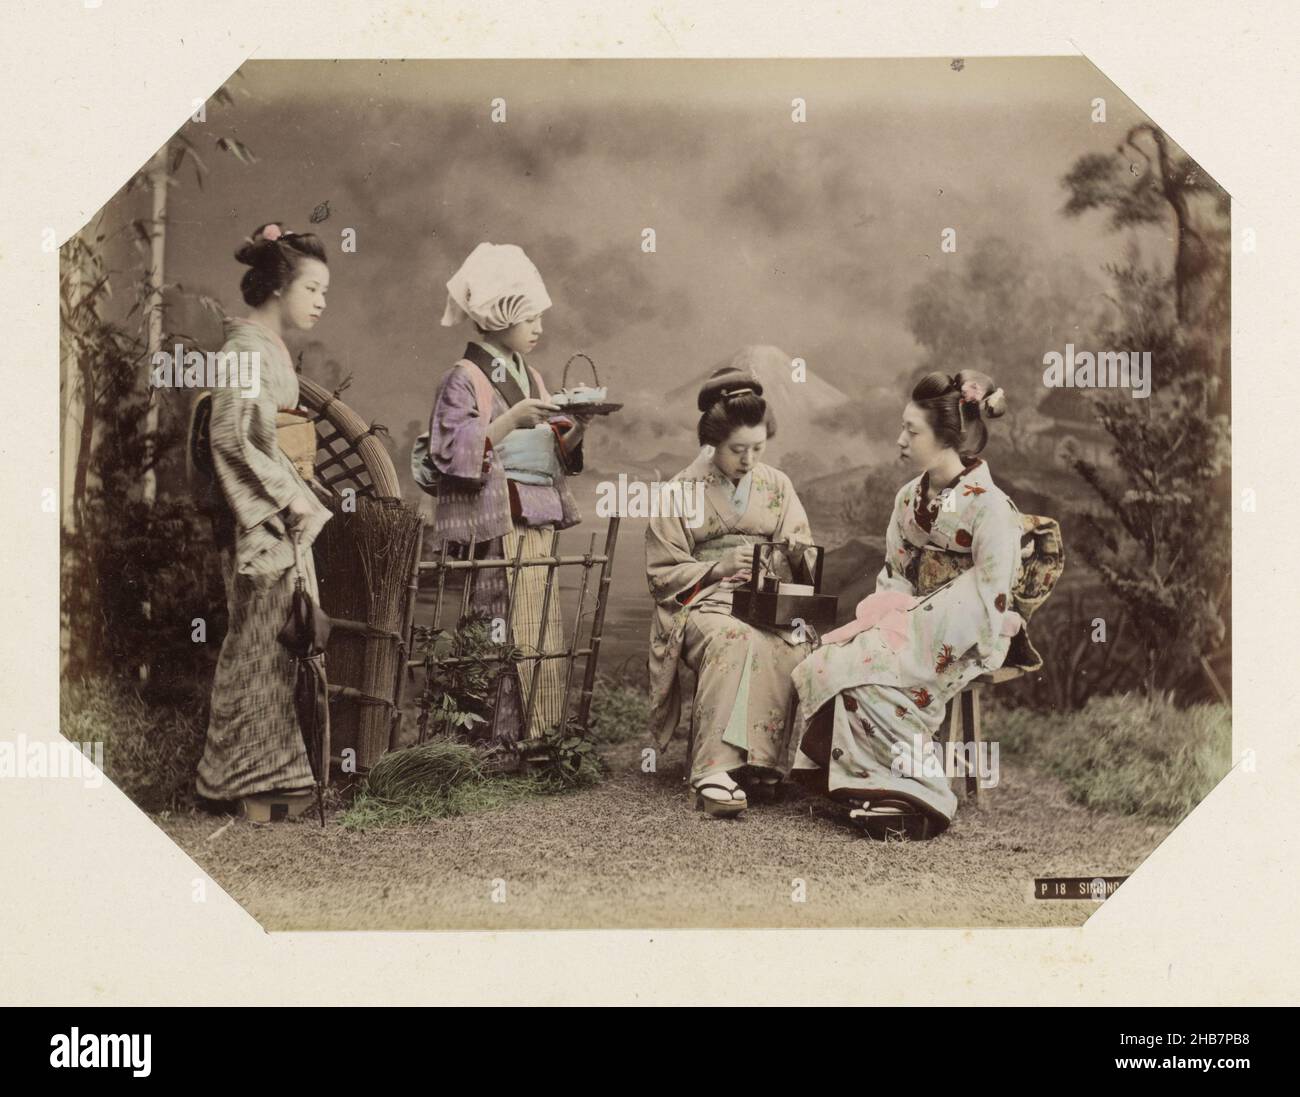 Portrait de groupe de quatre femmes japonaises avec thé, chant filles (titre sur objet), partie de photo album d'enregistrements de sites au Japon et portraits de studio., anonyme, Japon, c.1870 - c.1900, support photographique, peinture (revêtement), imprimé albumine, hauteur 198 mm × largeur 266 mm Banque D'Images